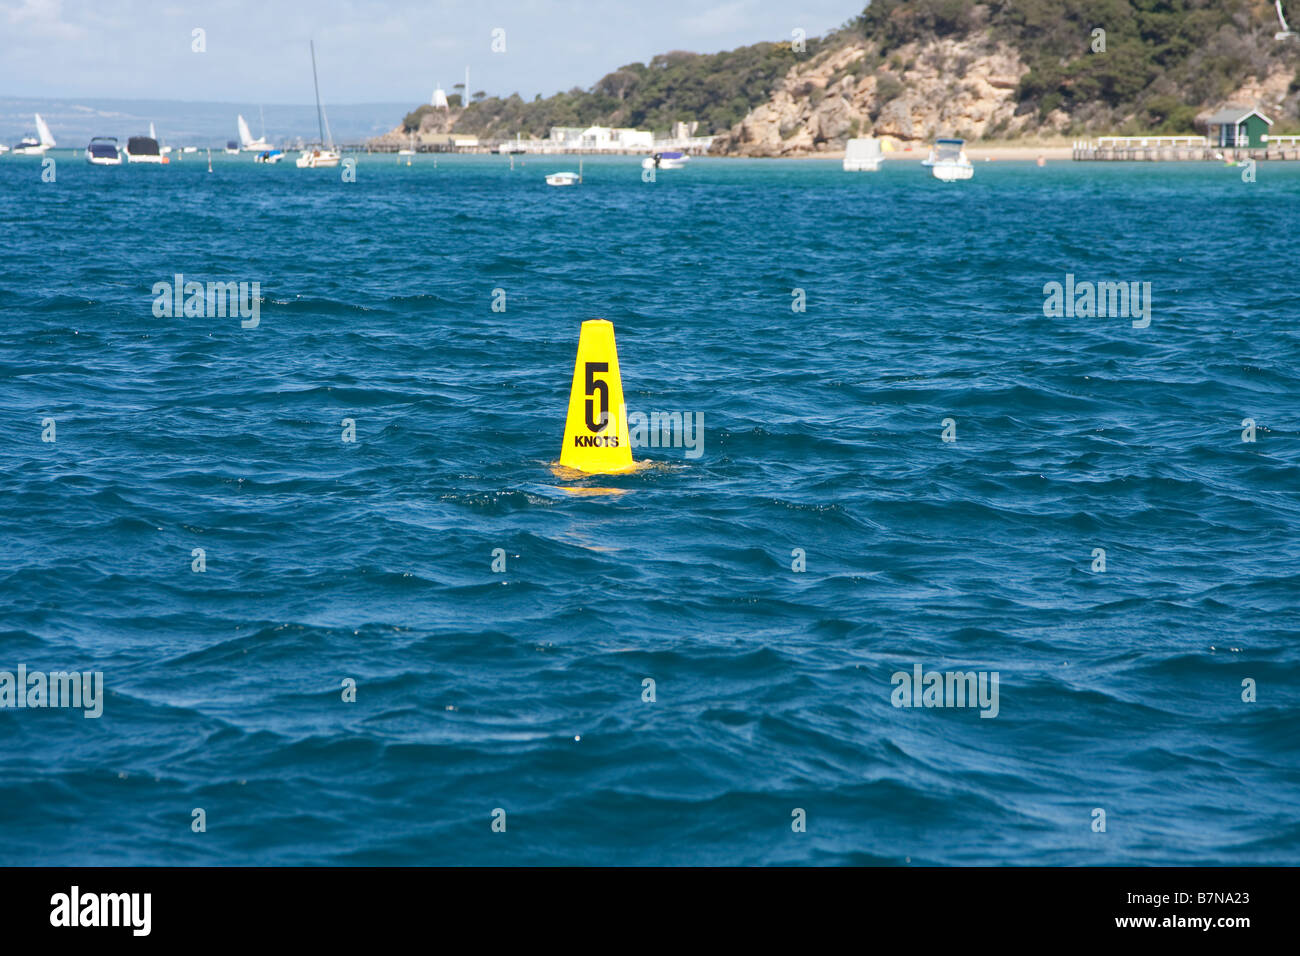 Métier de l'eau - limite de vitesse 5 nœuds. Portsea Off, Mornington Peninsula, Victoria, Australie. Banque D'Images